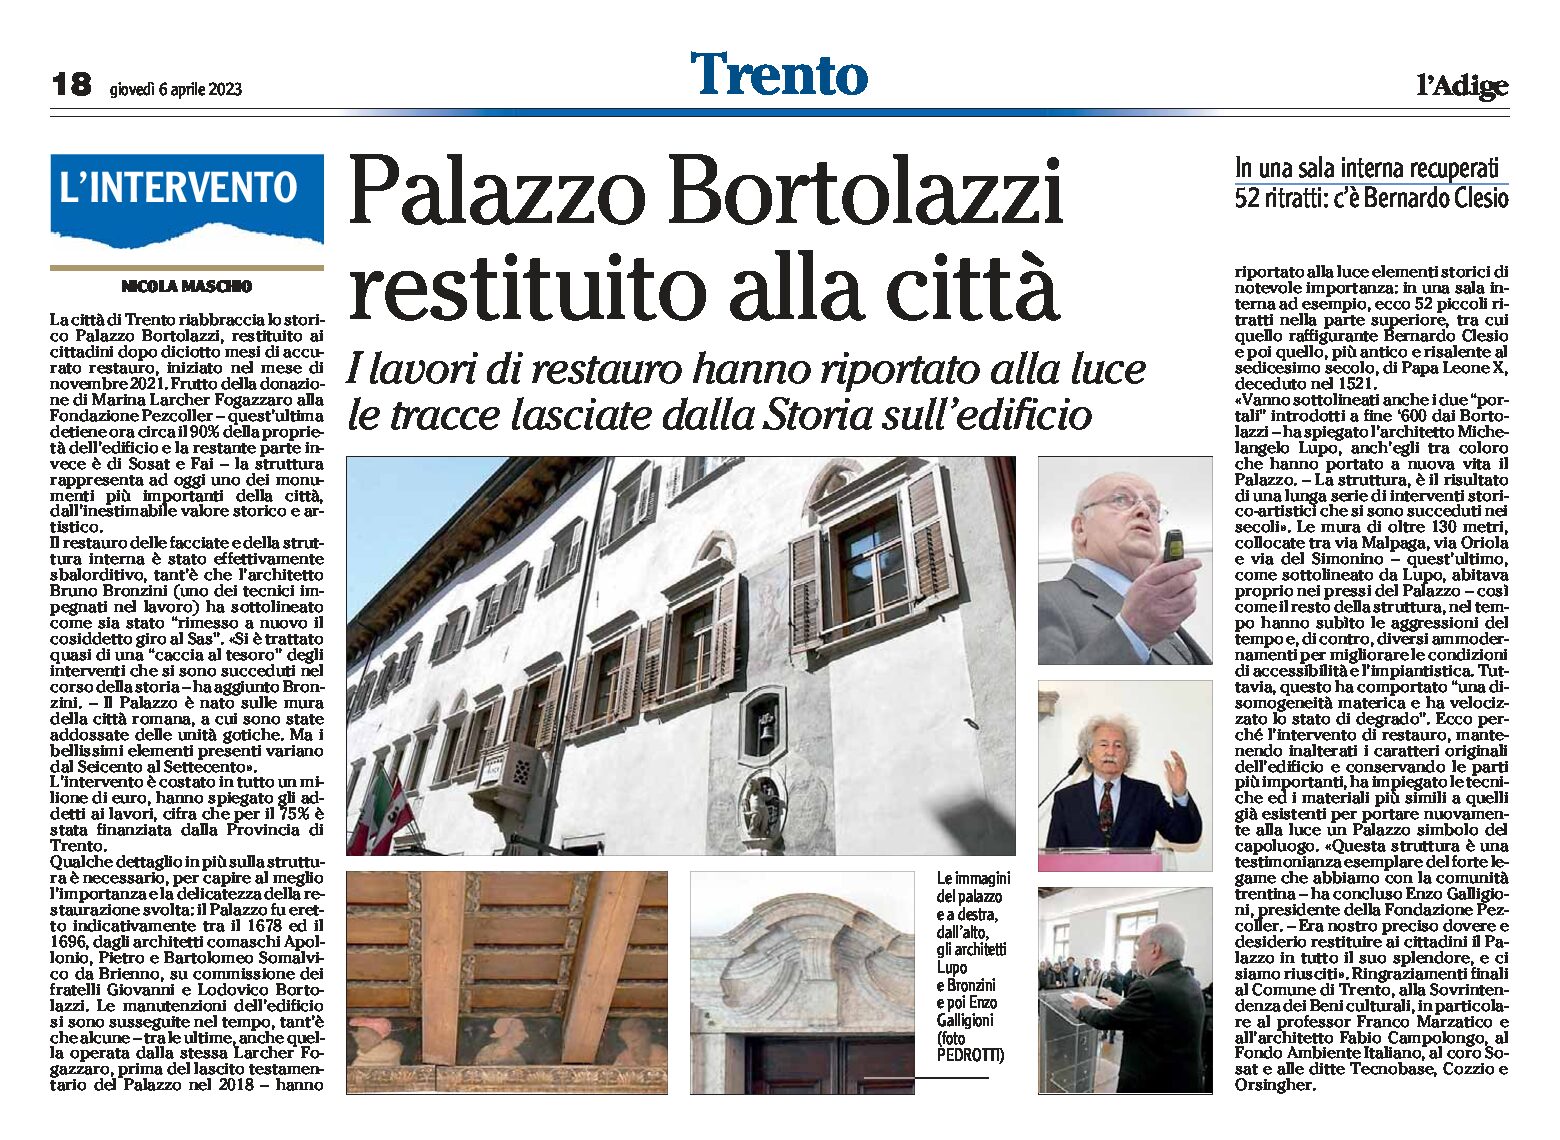 Trento, Palazzo Bortolazzi: restituito alla città